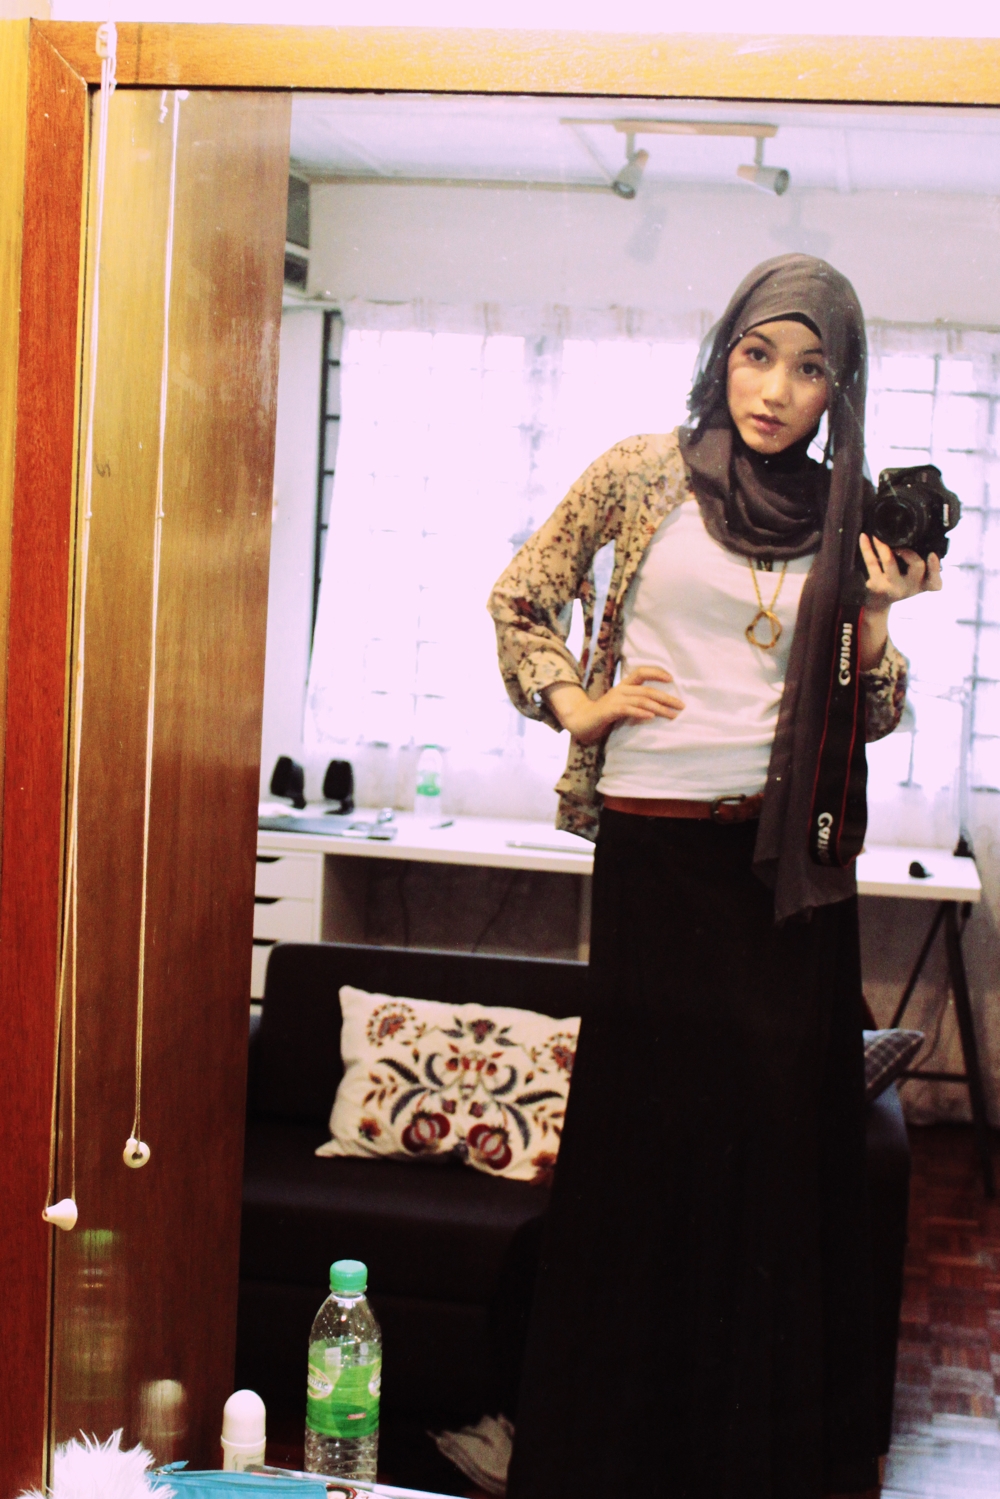 Hijab blog: Casual Style with Hana Tajima Part II